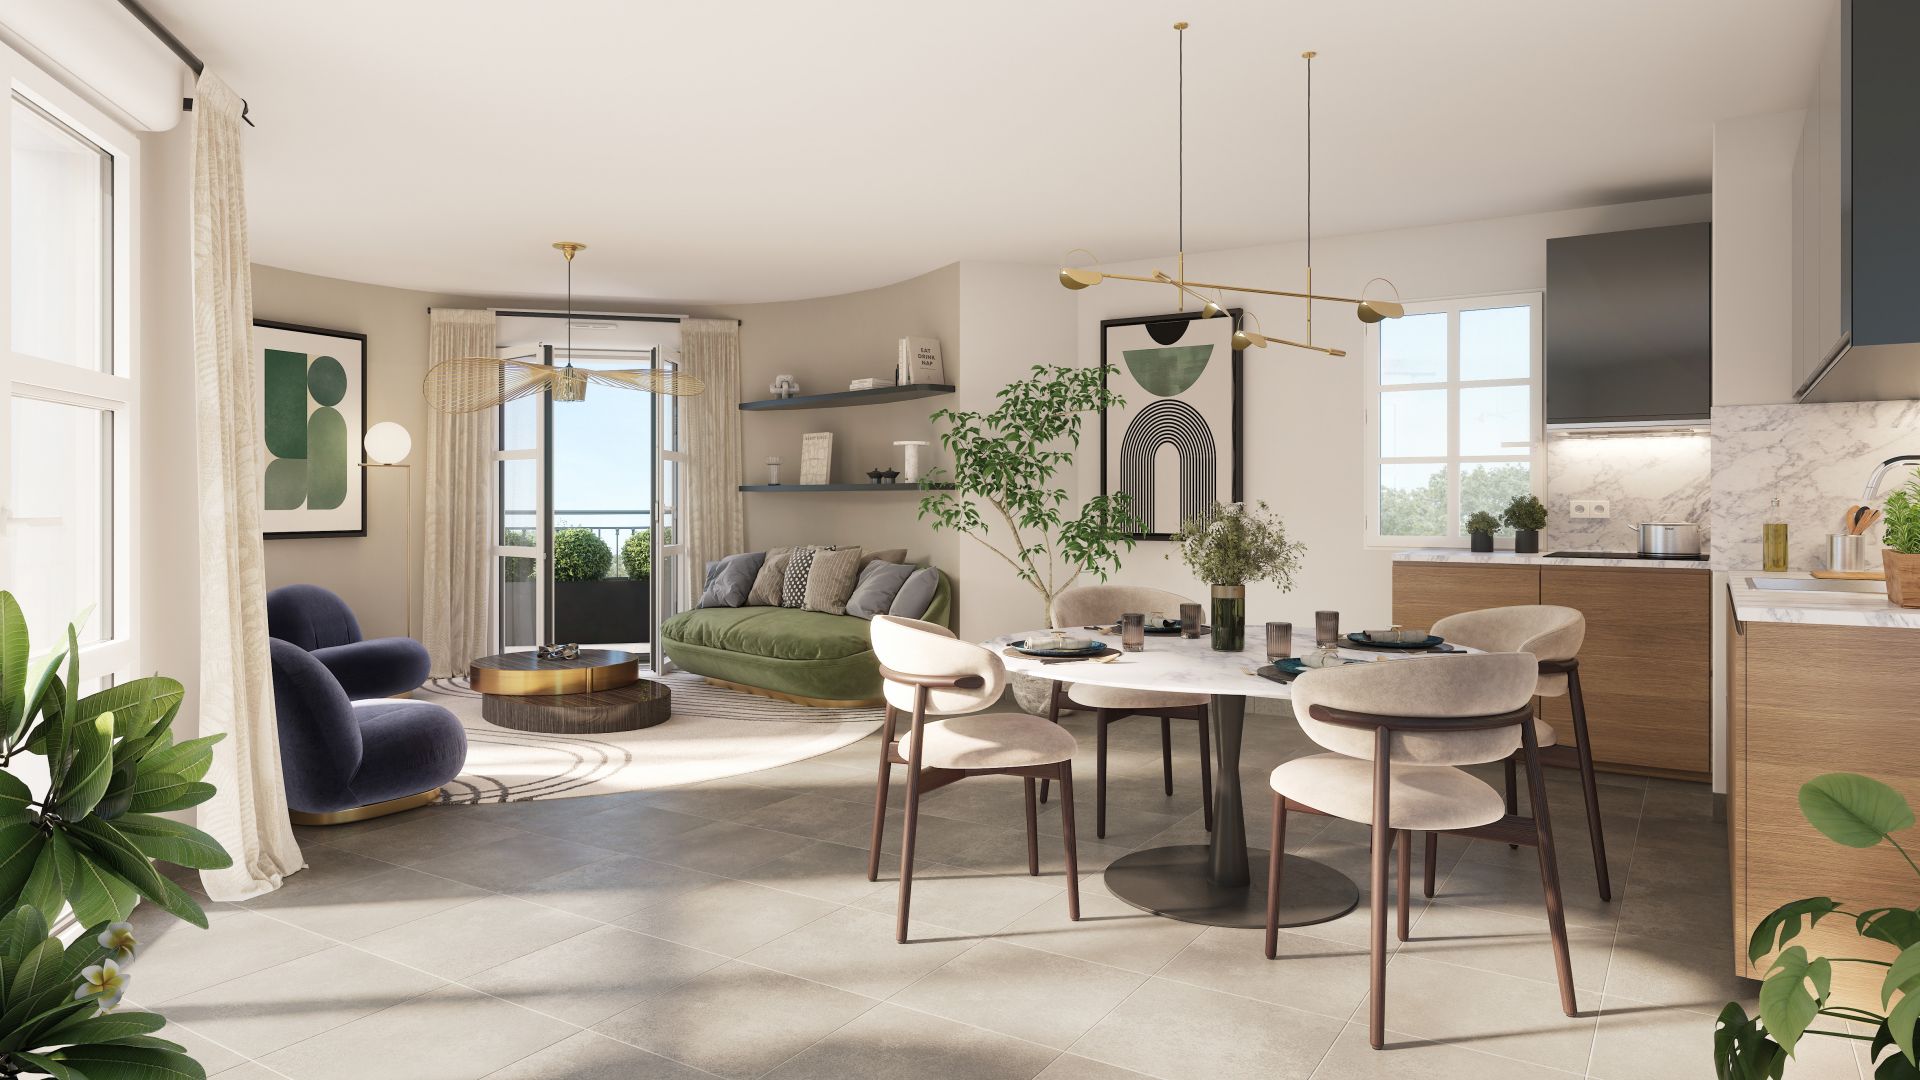 Greencity immobilier - achat appartements neufs du T2 au T4 - Résidence Square Victoria - Villiers-Sur-Marne (4350